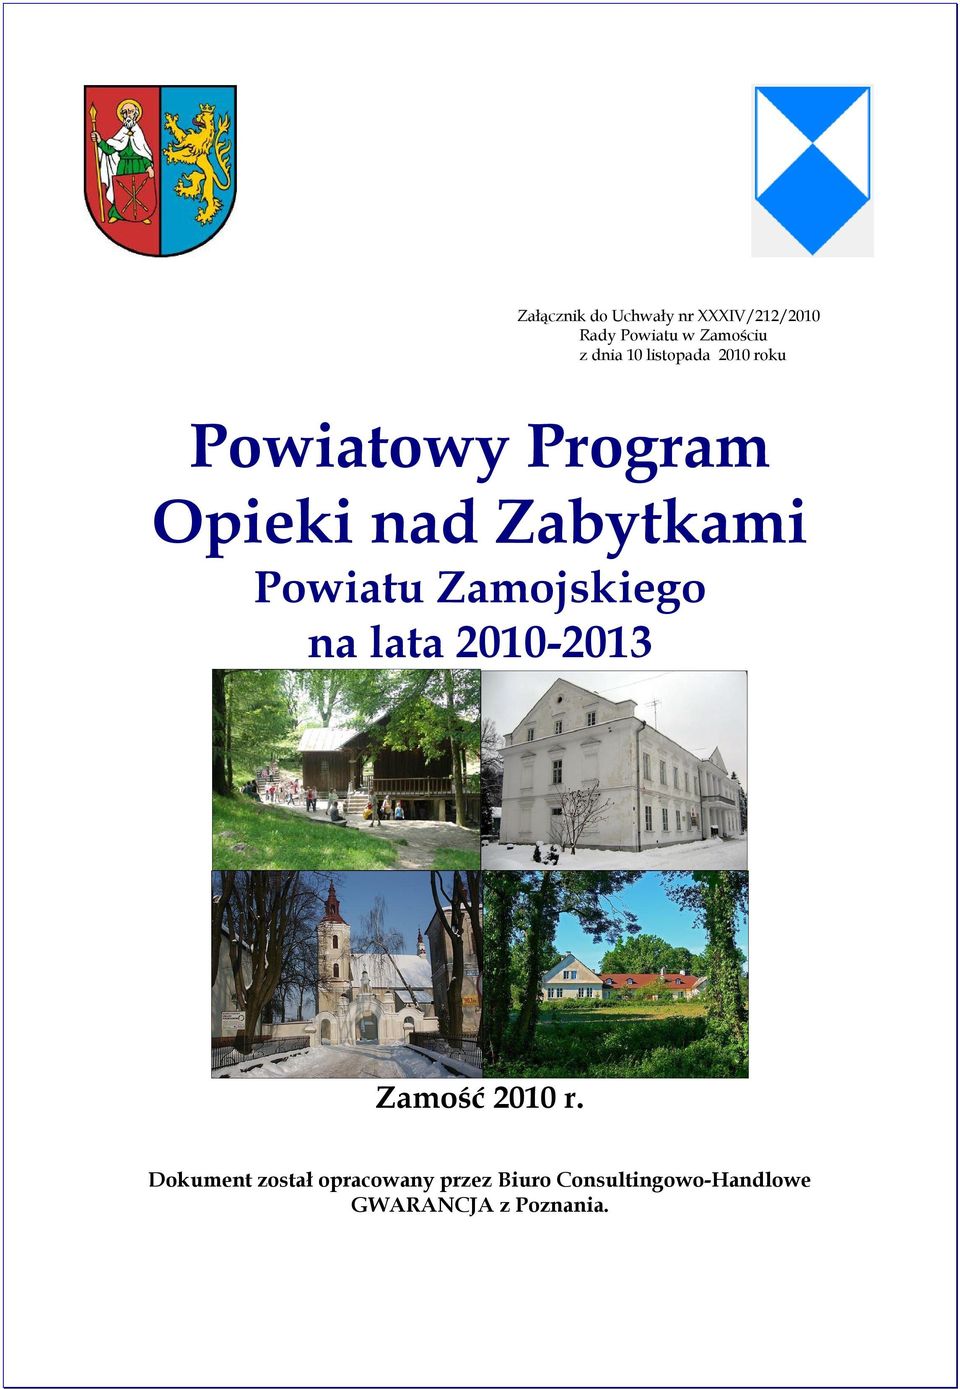 Powiatu Zamojskiego na lata 2010-2013 Zamość 2010 r.